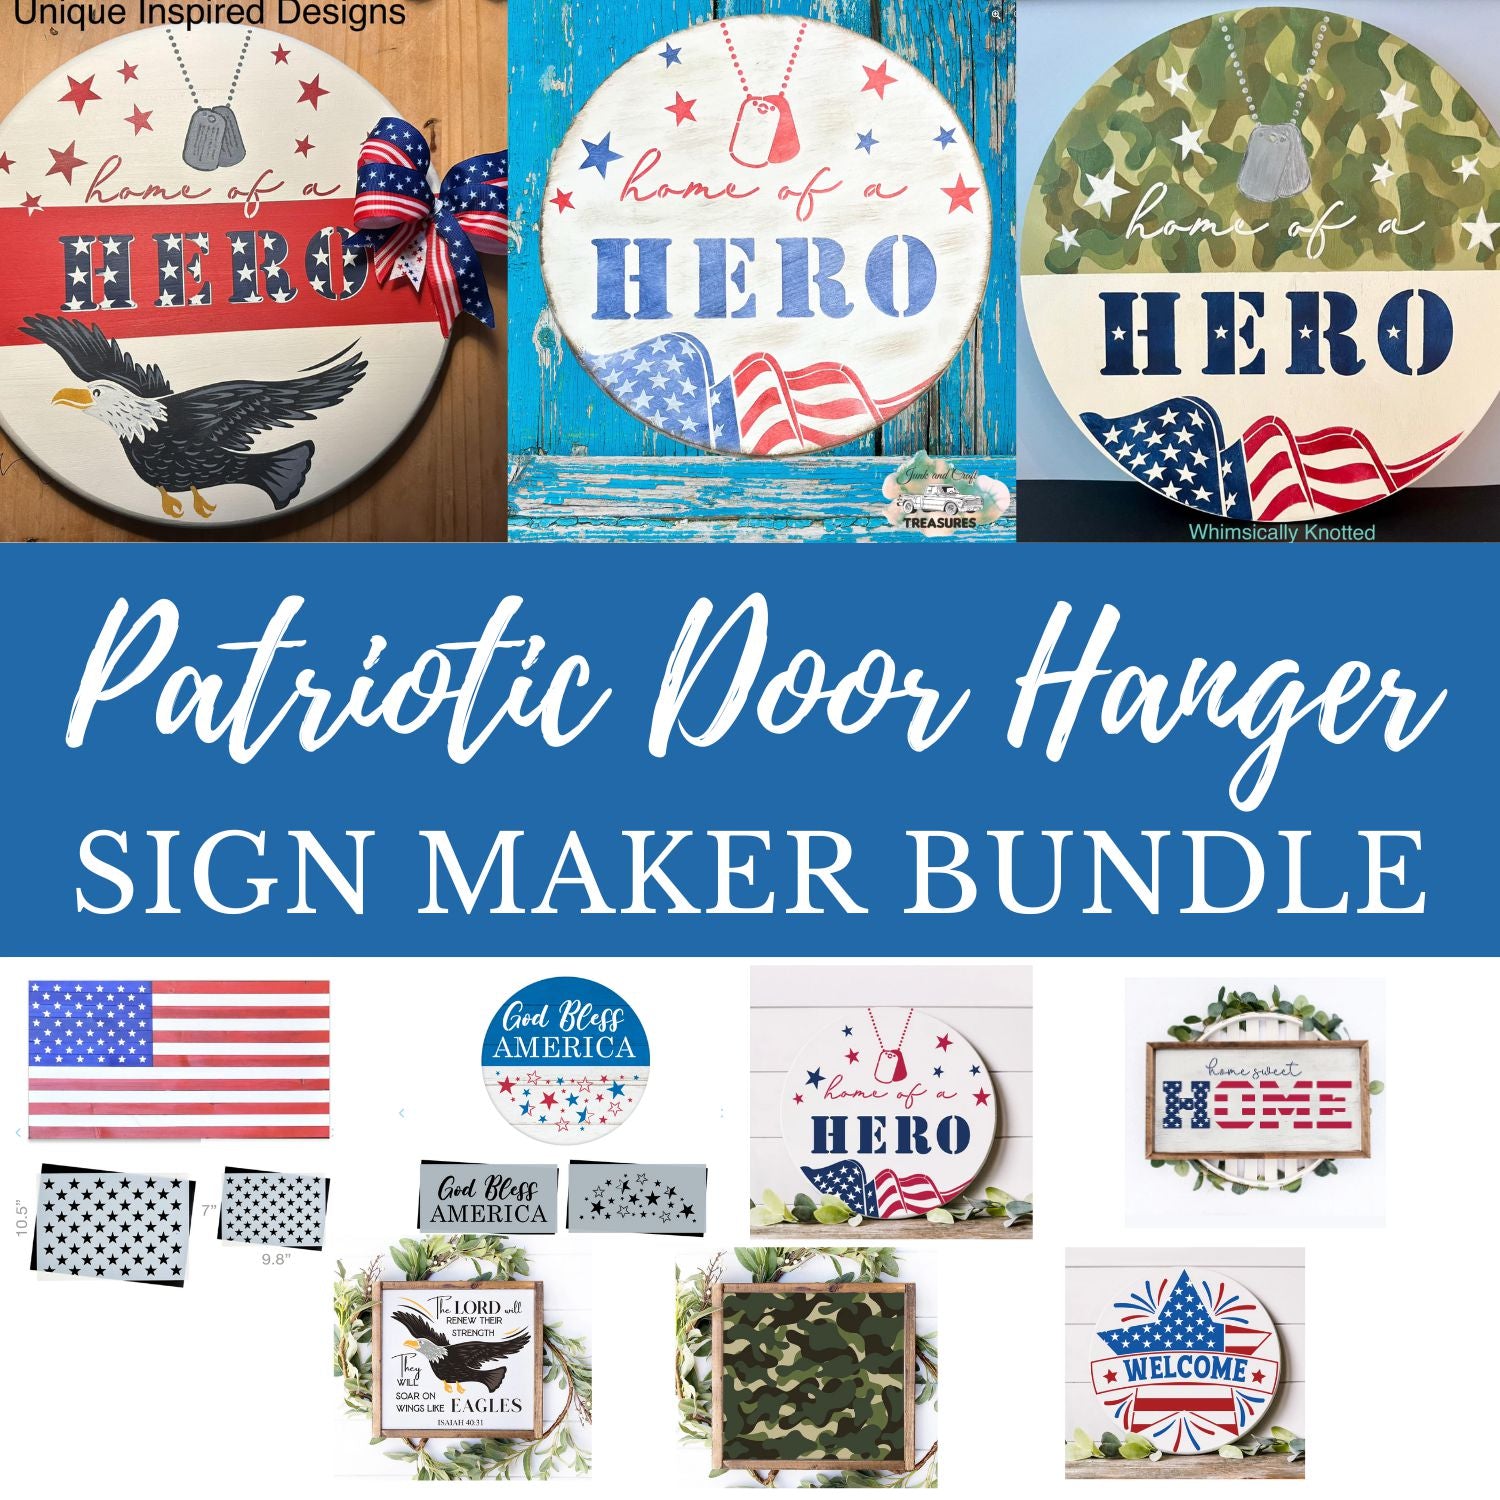 Patriotic Door Hanger Sign Maker Bundle